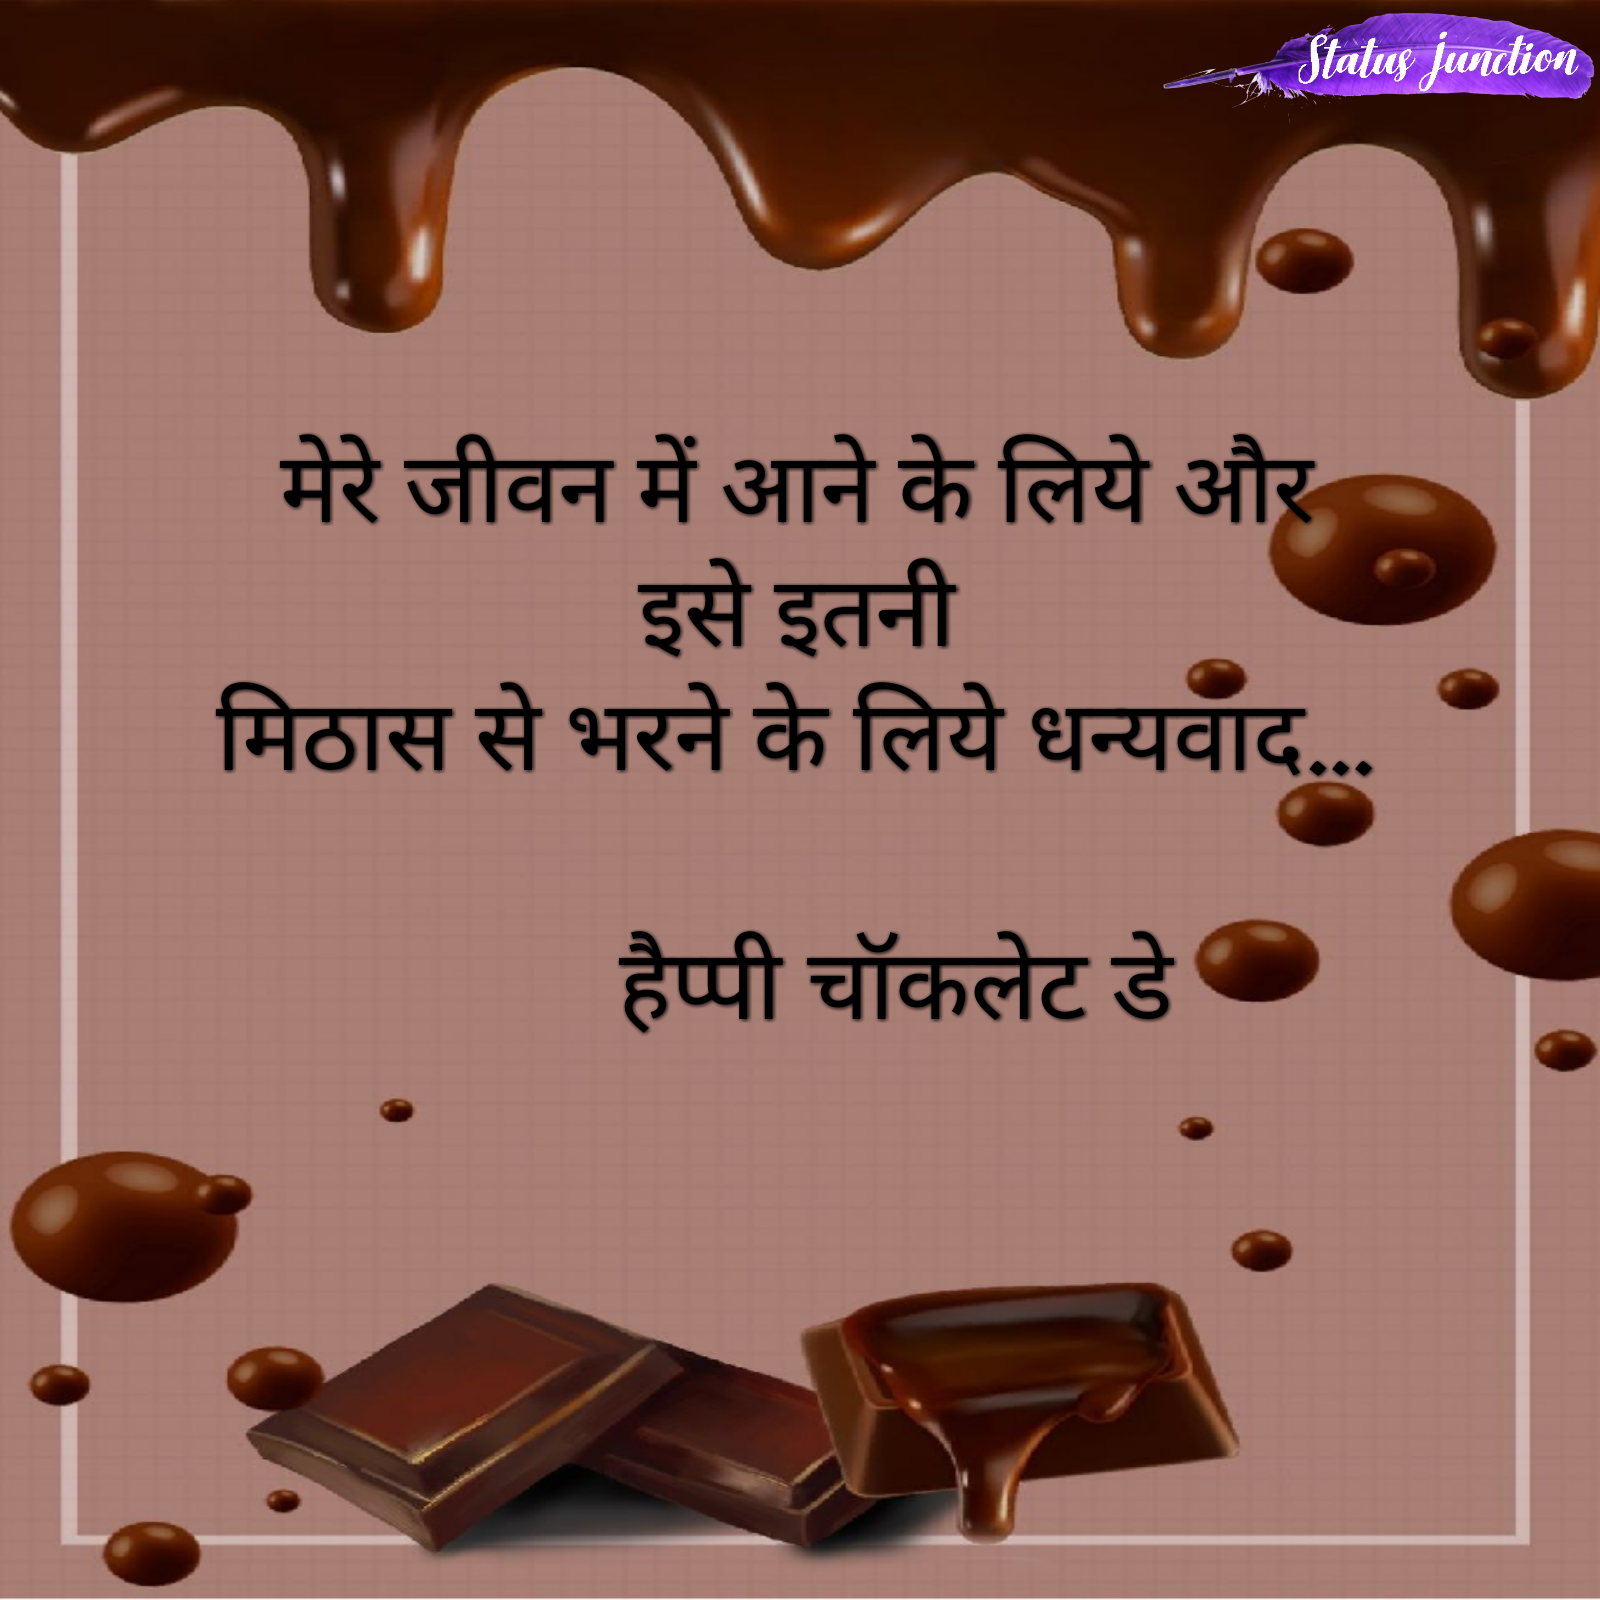 mere jeevan me aane ke liye or ise itni mithas se bharne ke liye dhanybad...Happy Chocolate Day.मेरे जीवन मे आने के लिए और इसे इतनी मिठास से भरने के लिए धन्यबाद ...हैप्पी चॉक्लेट डे